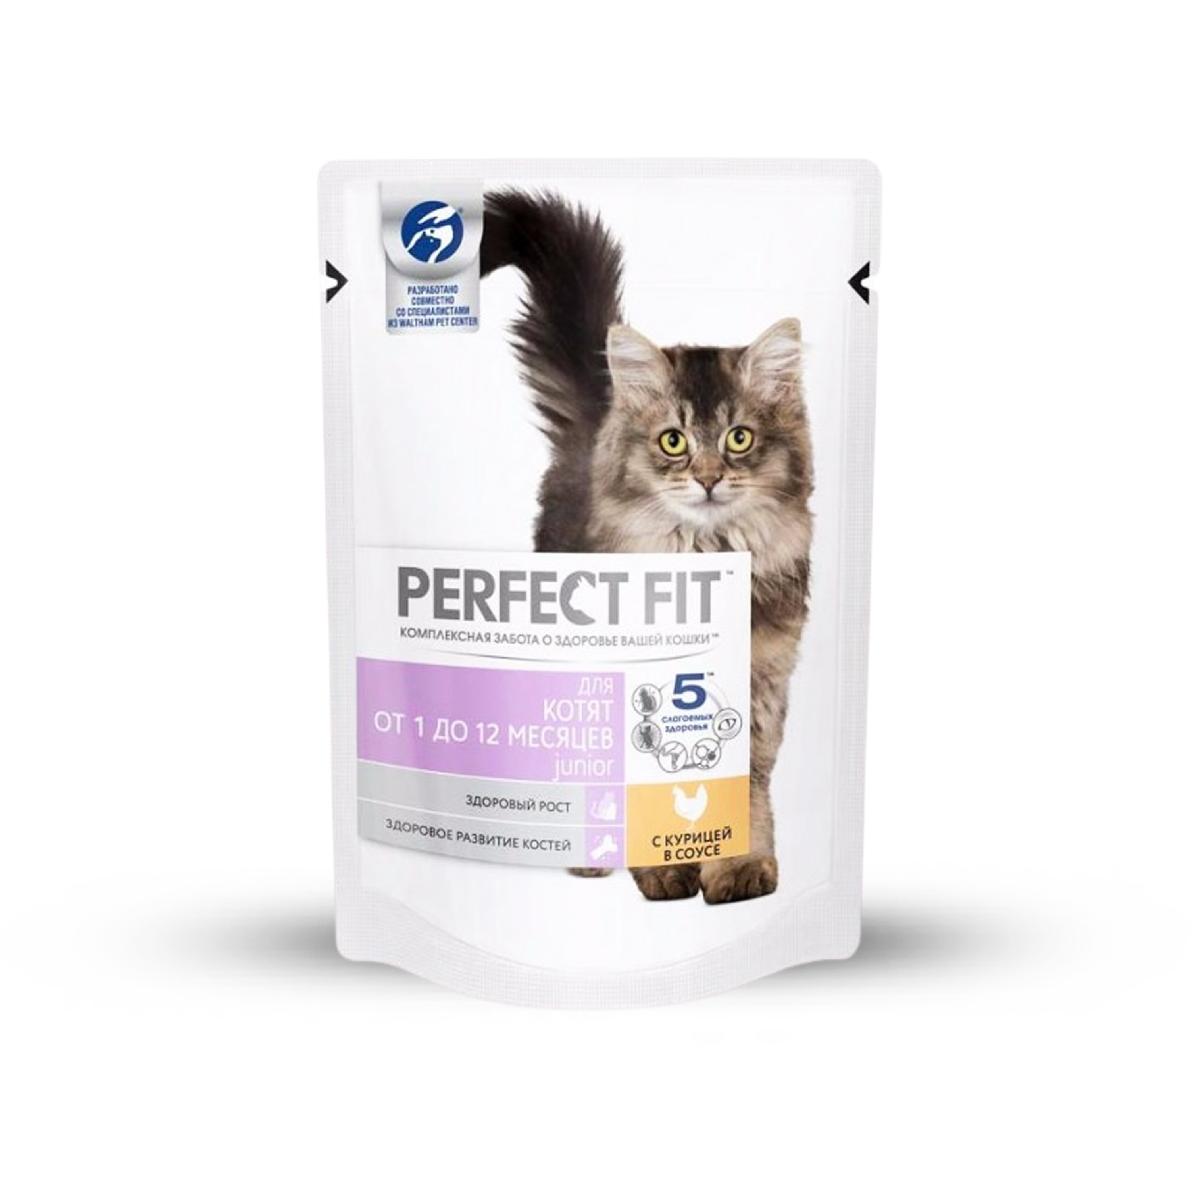 Перфект Фит мясные кусочки для котят 85гр (24)